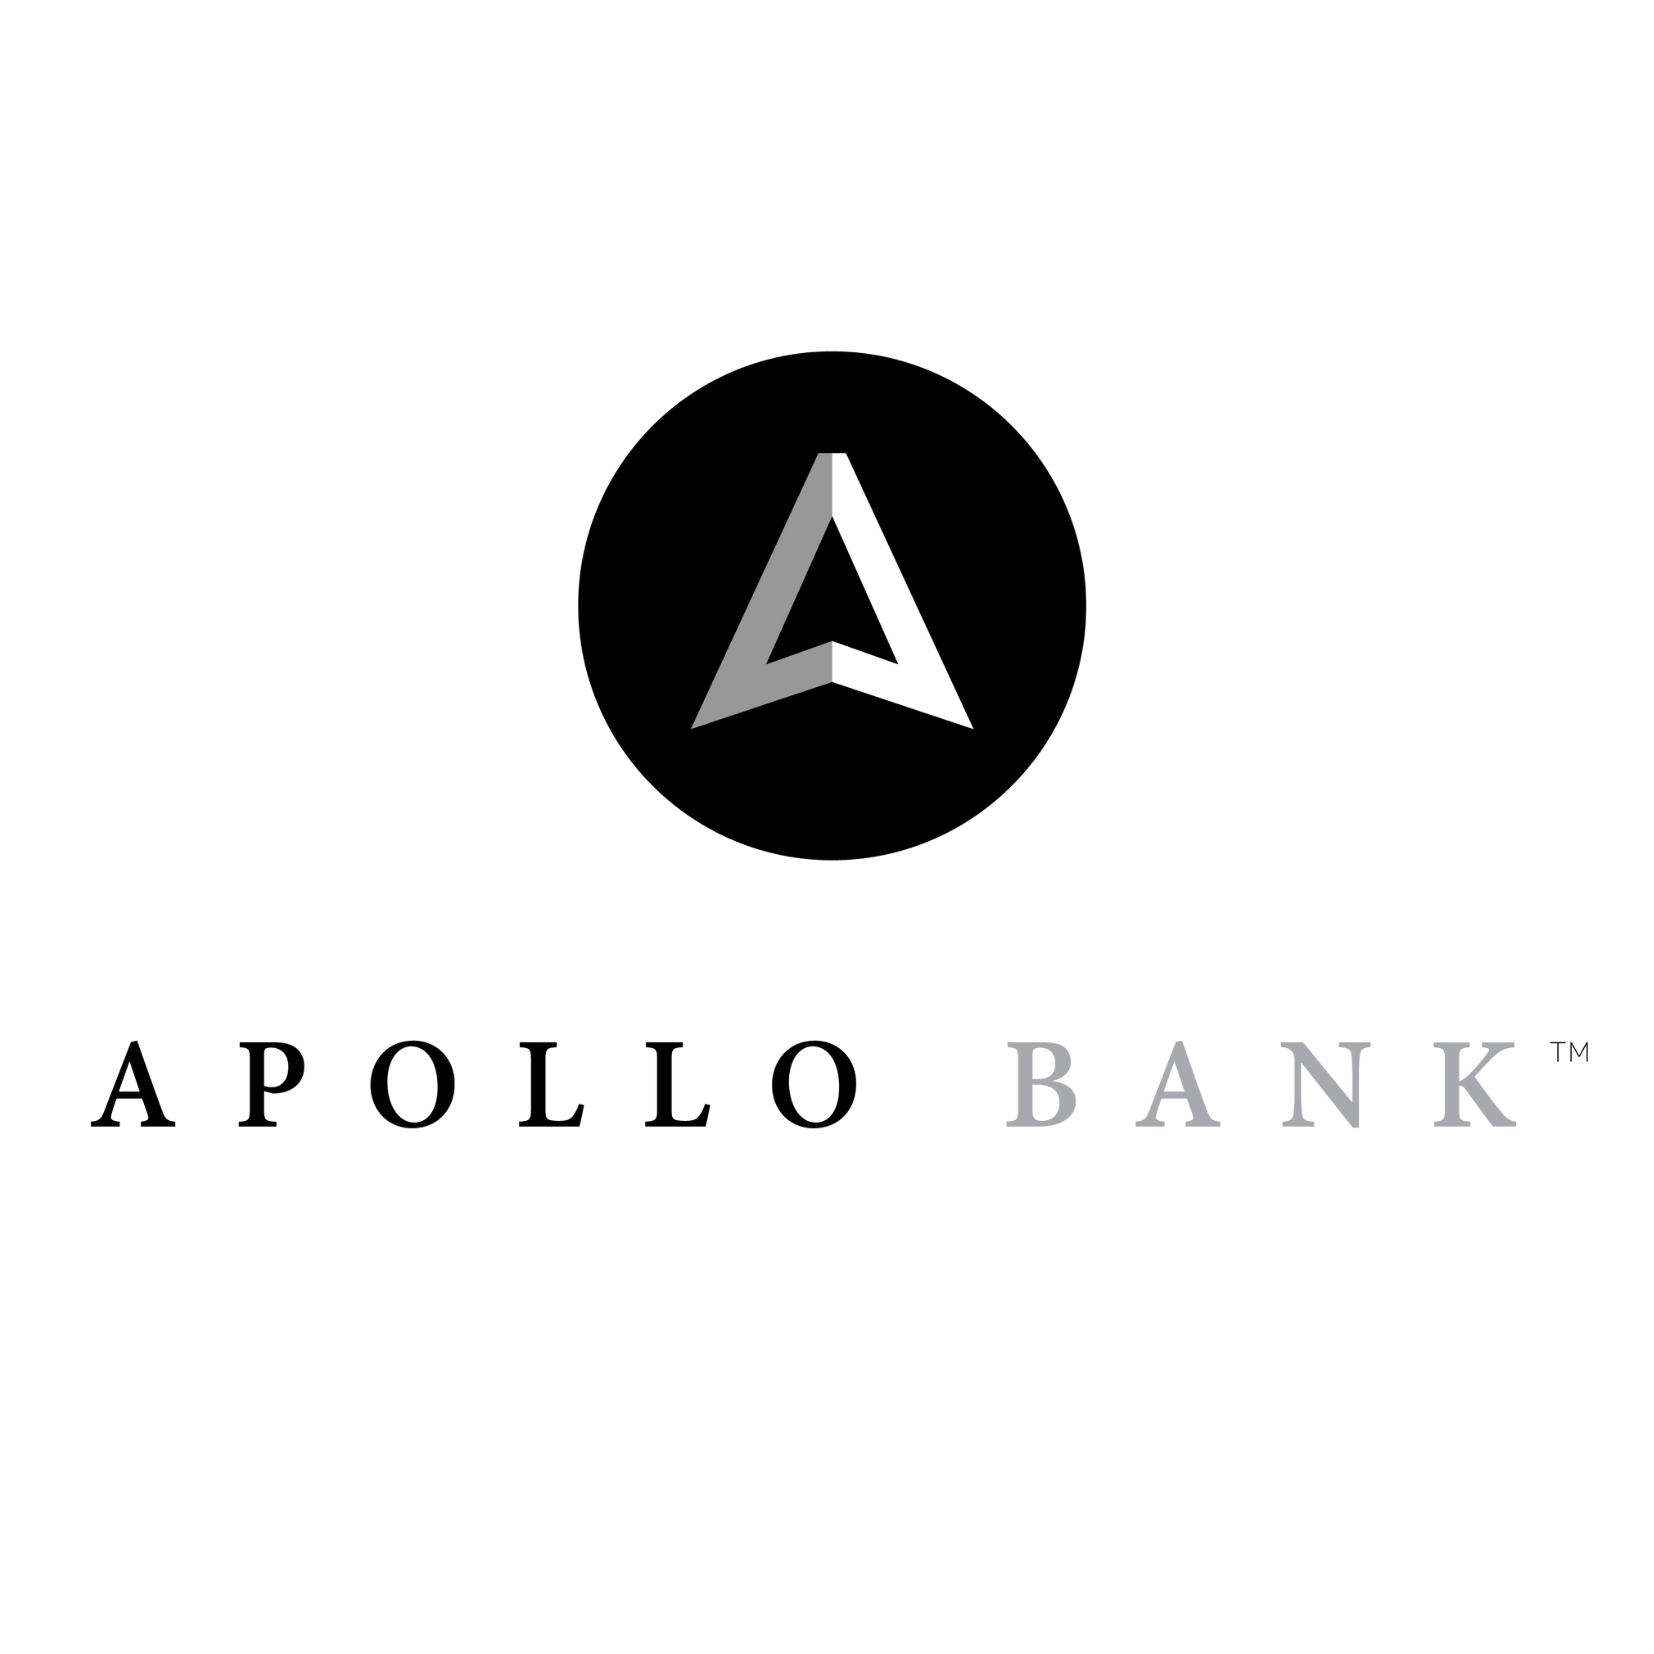 Apollo Bank logo